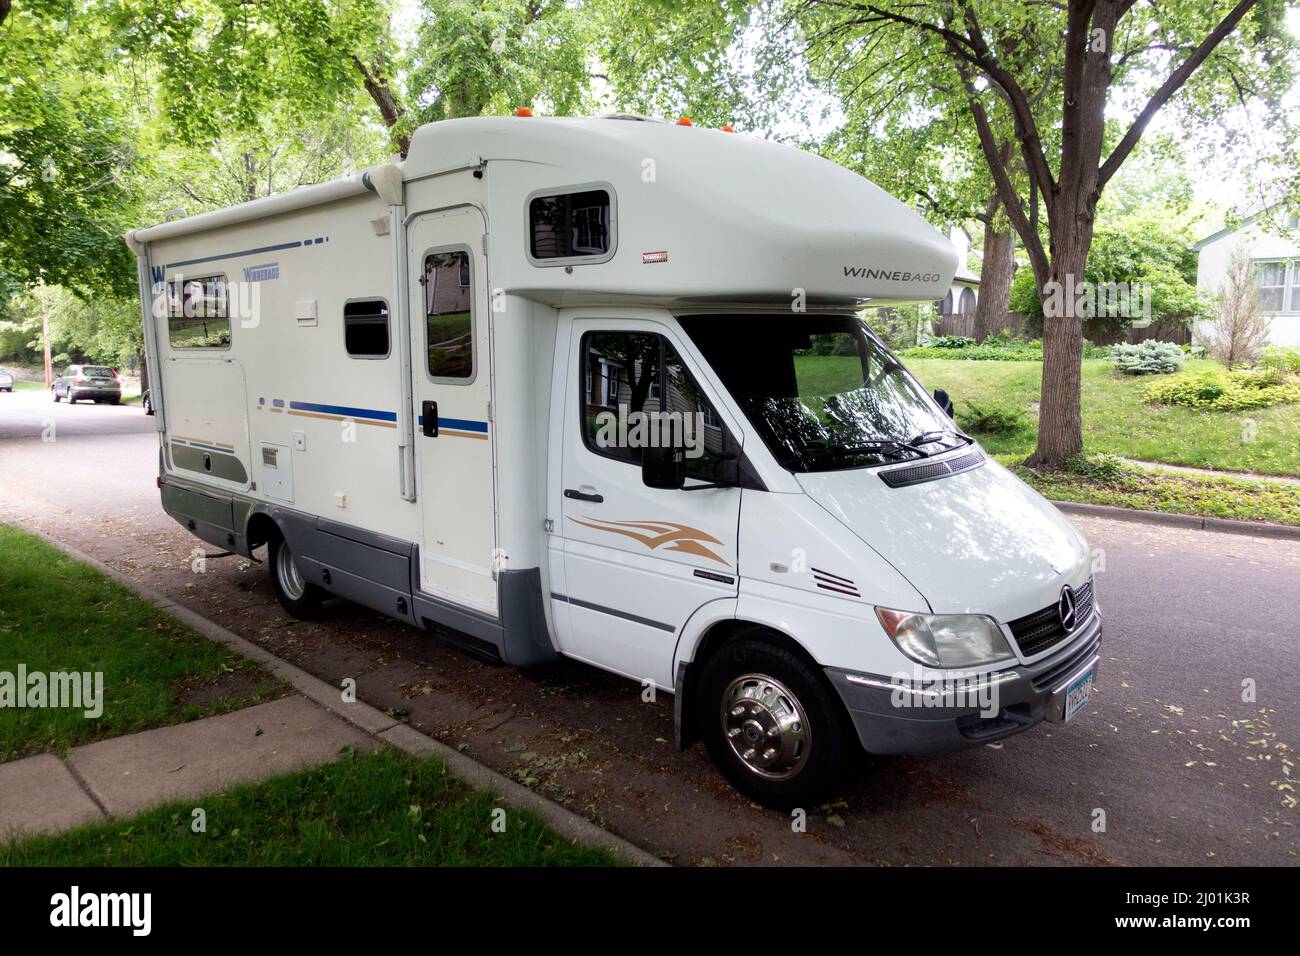 Elegant aussehender Winnebago Travel Trailer, der auf einer Straße in der Nachbarschaft geparkt ist und neue Orte erkunden möchte. St. Paul Minnesota, USA Stockfoto